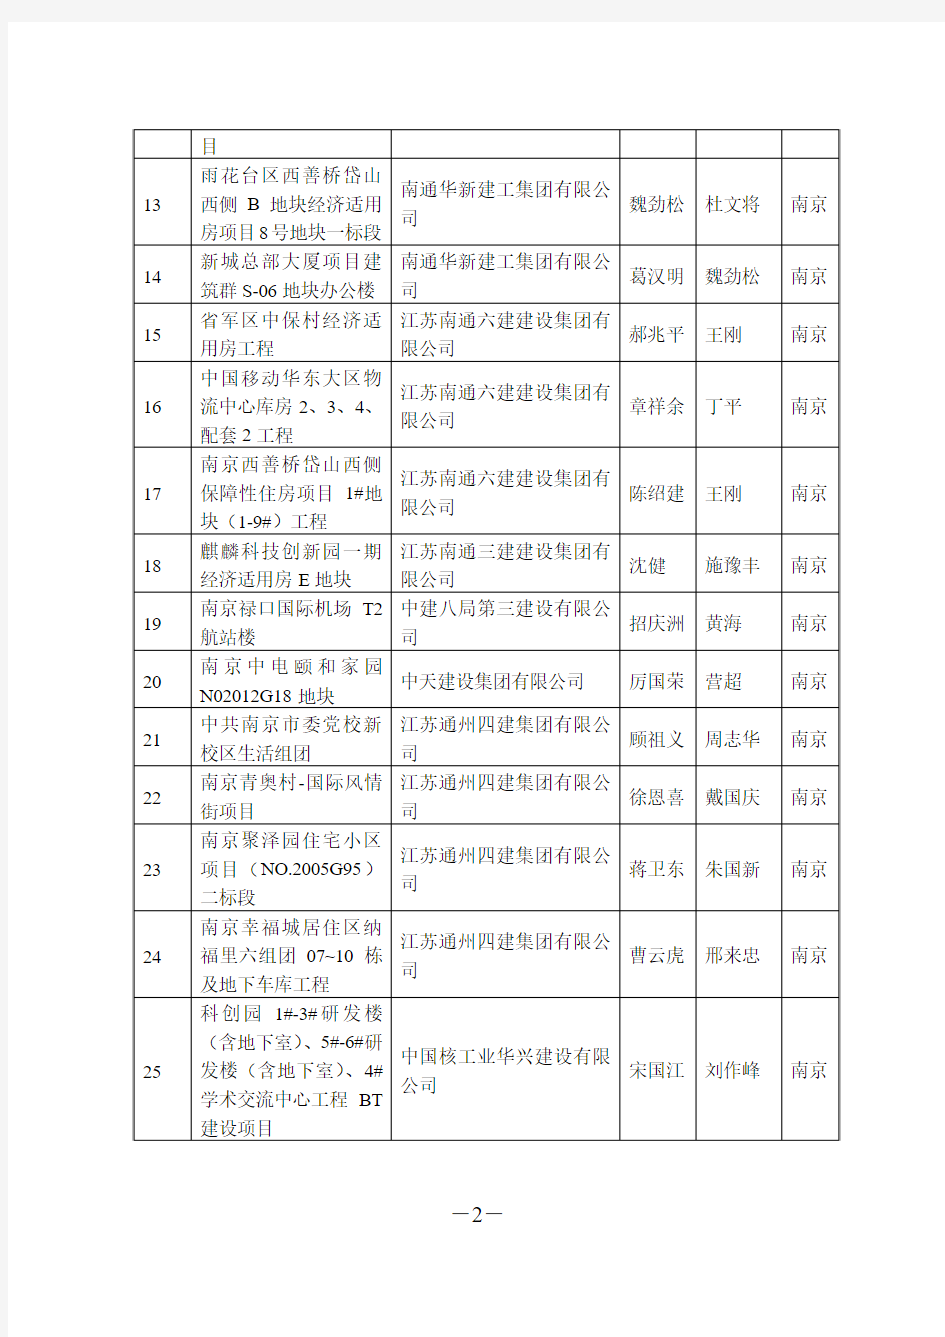 第十九批江苏省建筑业新技术应用示范工程目标项目立项名单